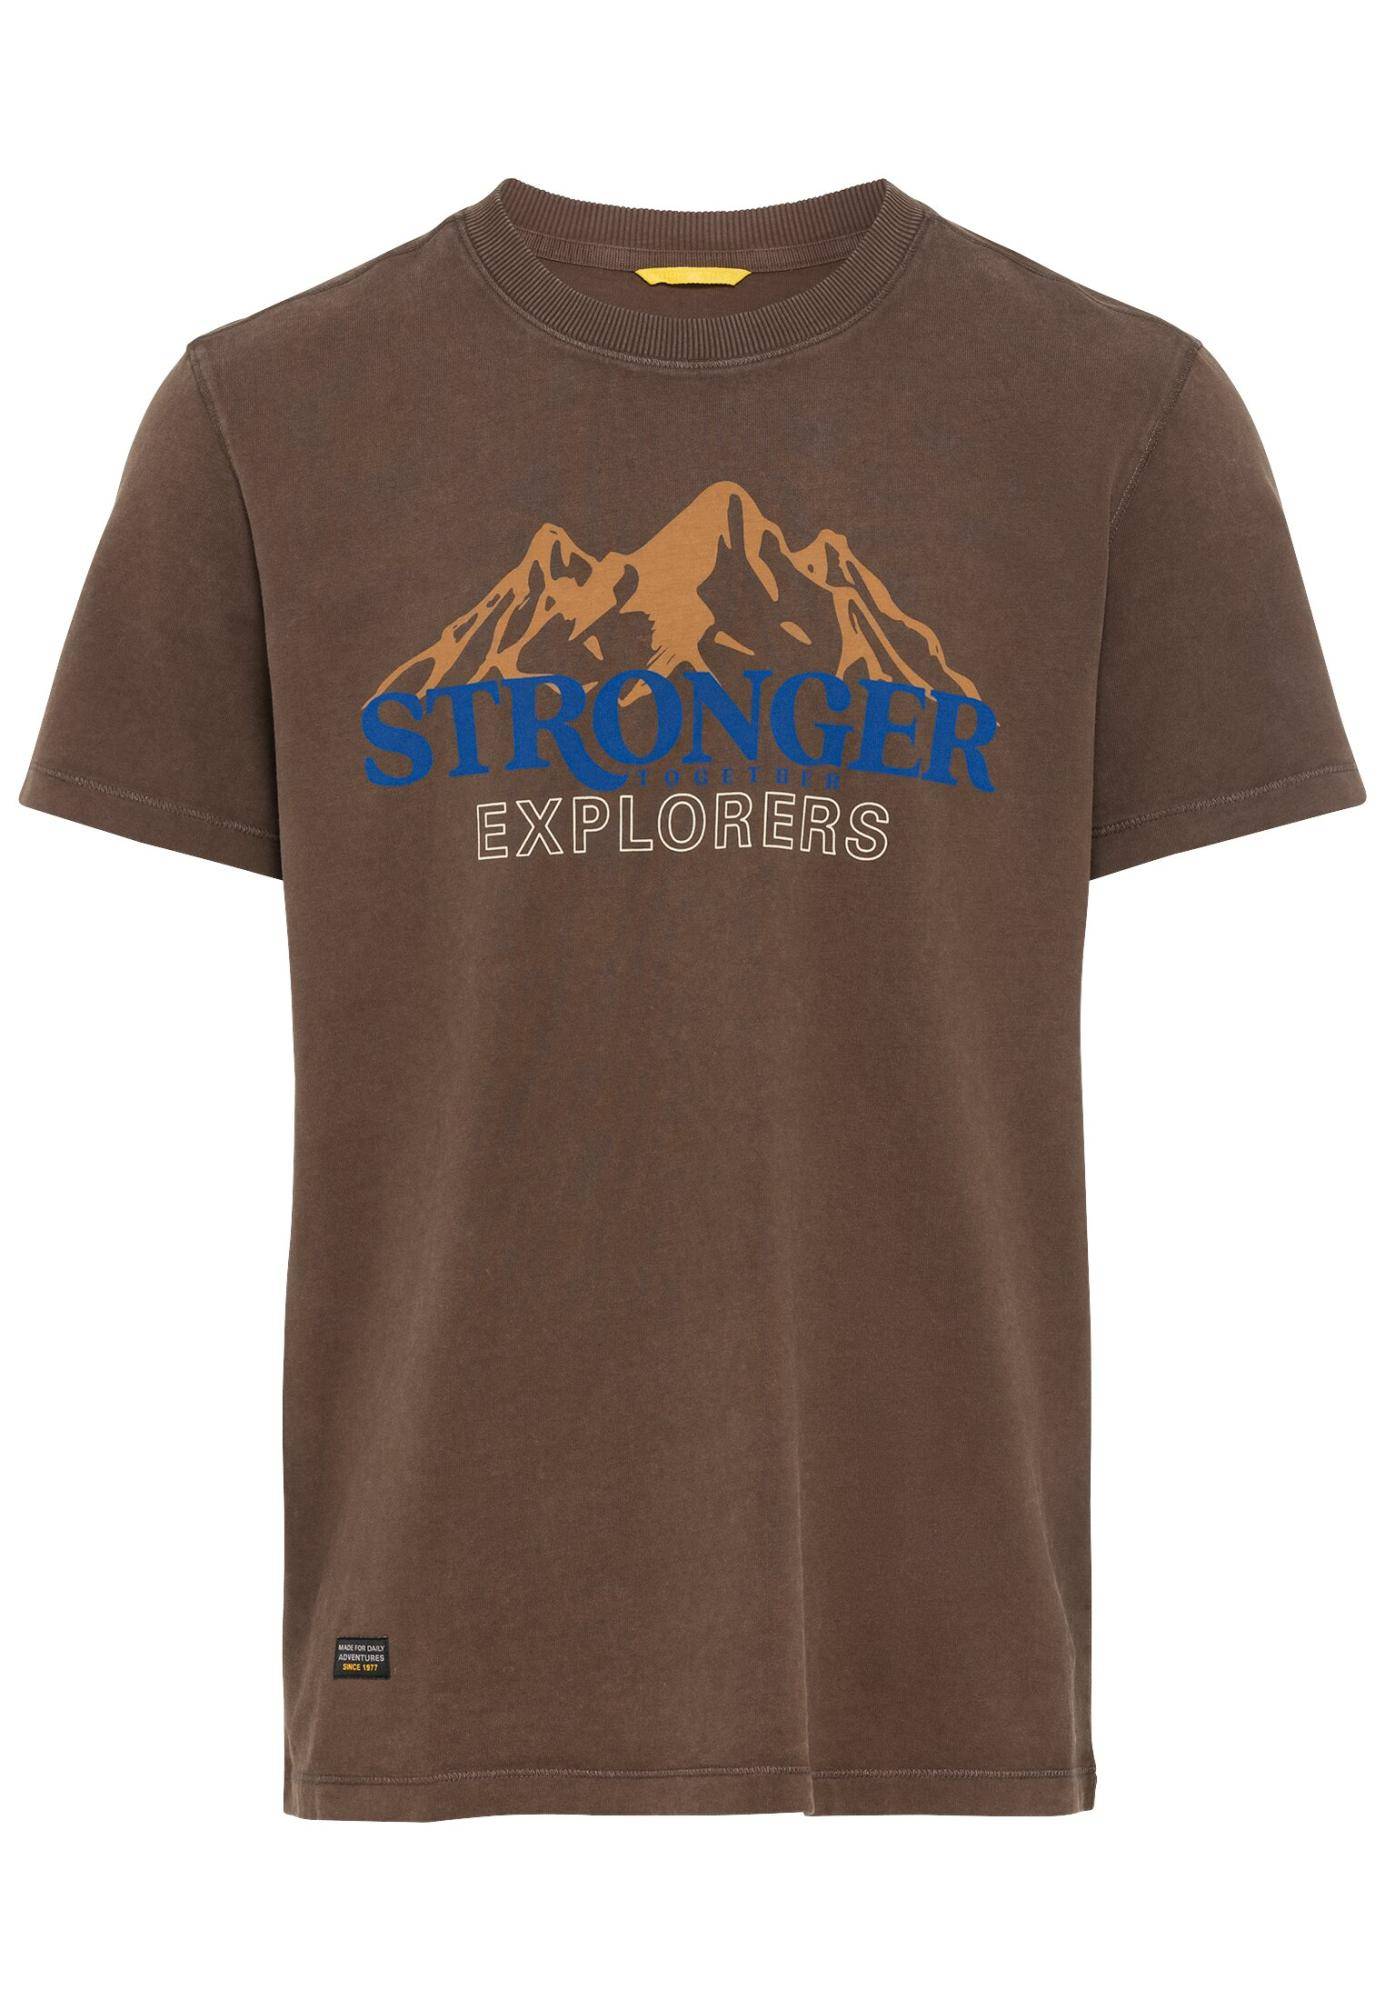 Мужская футболка Camel Active, коричневая, цвет коричневый, размер 56